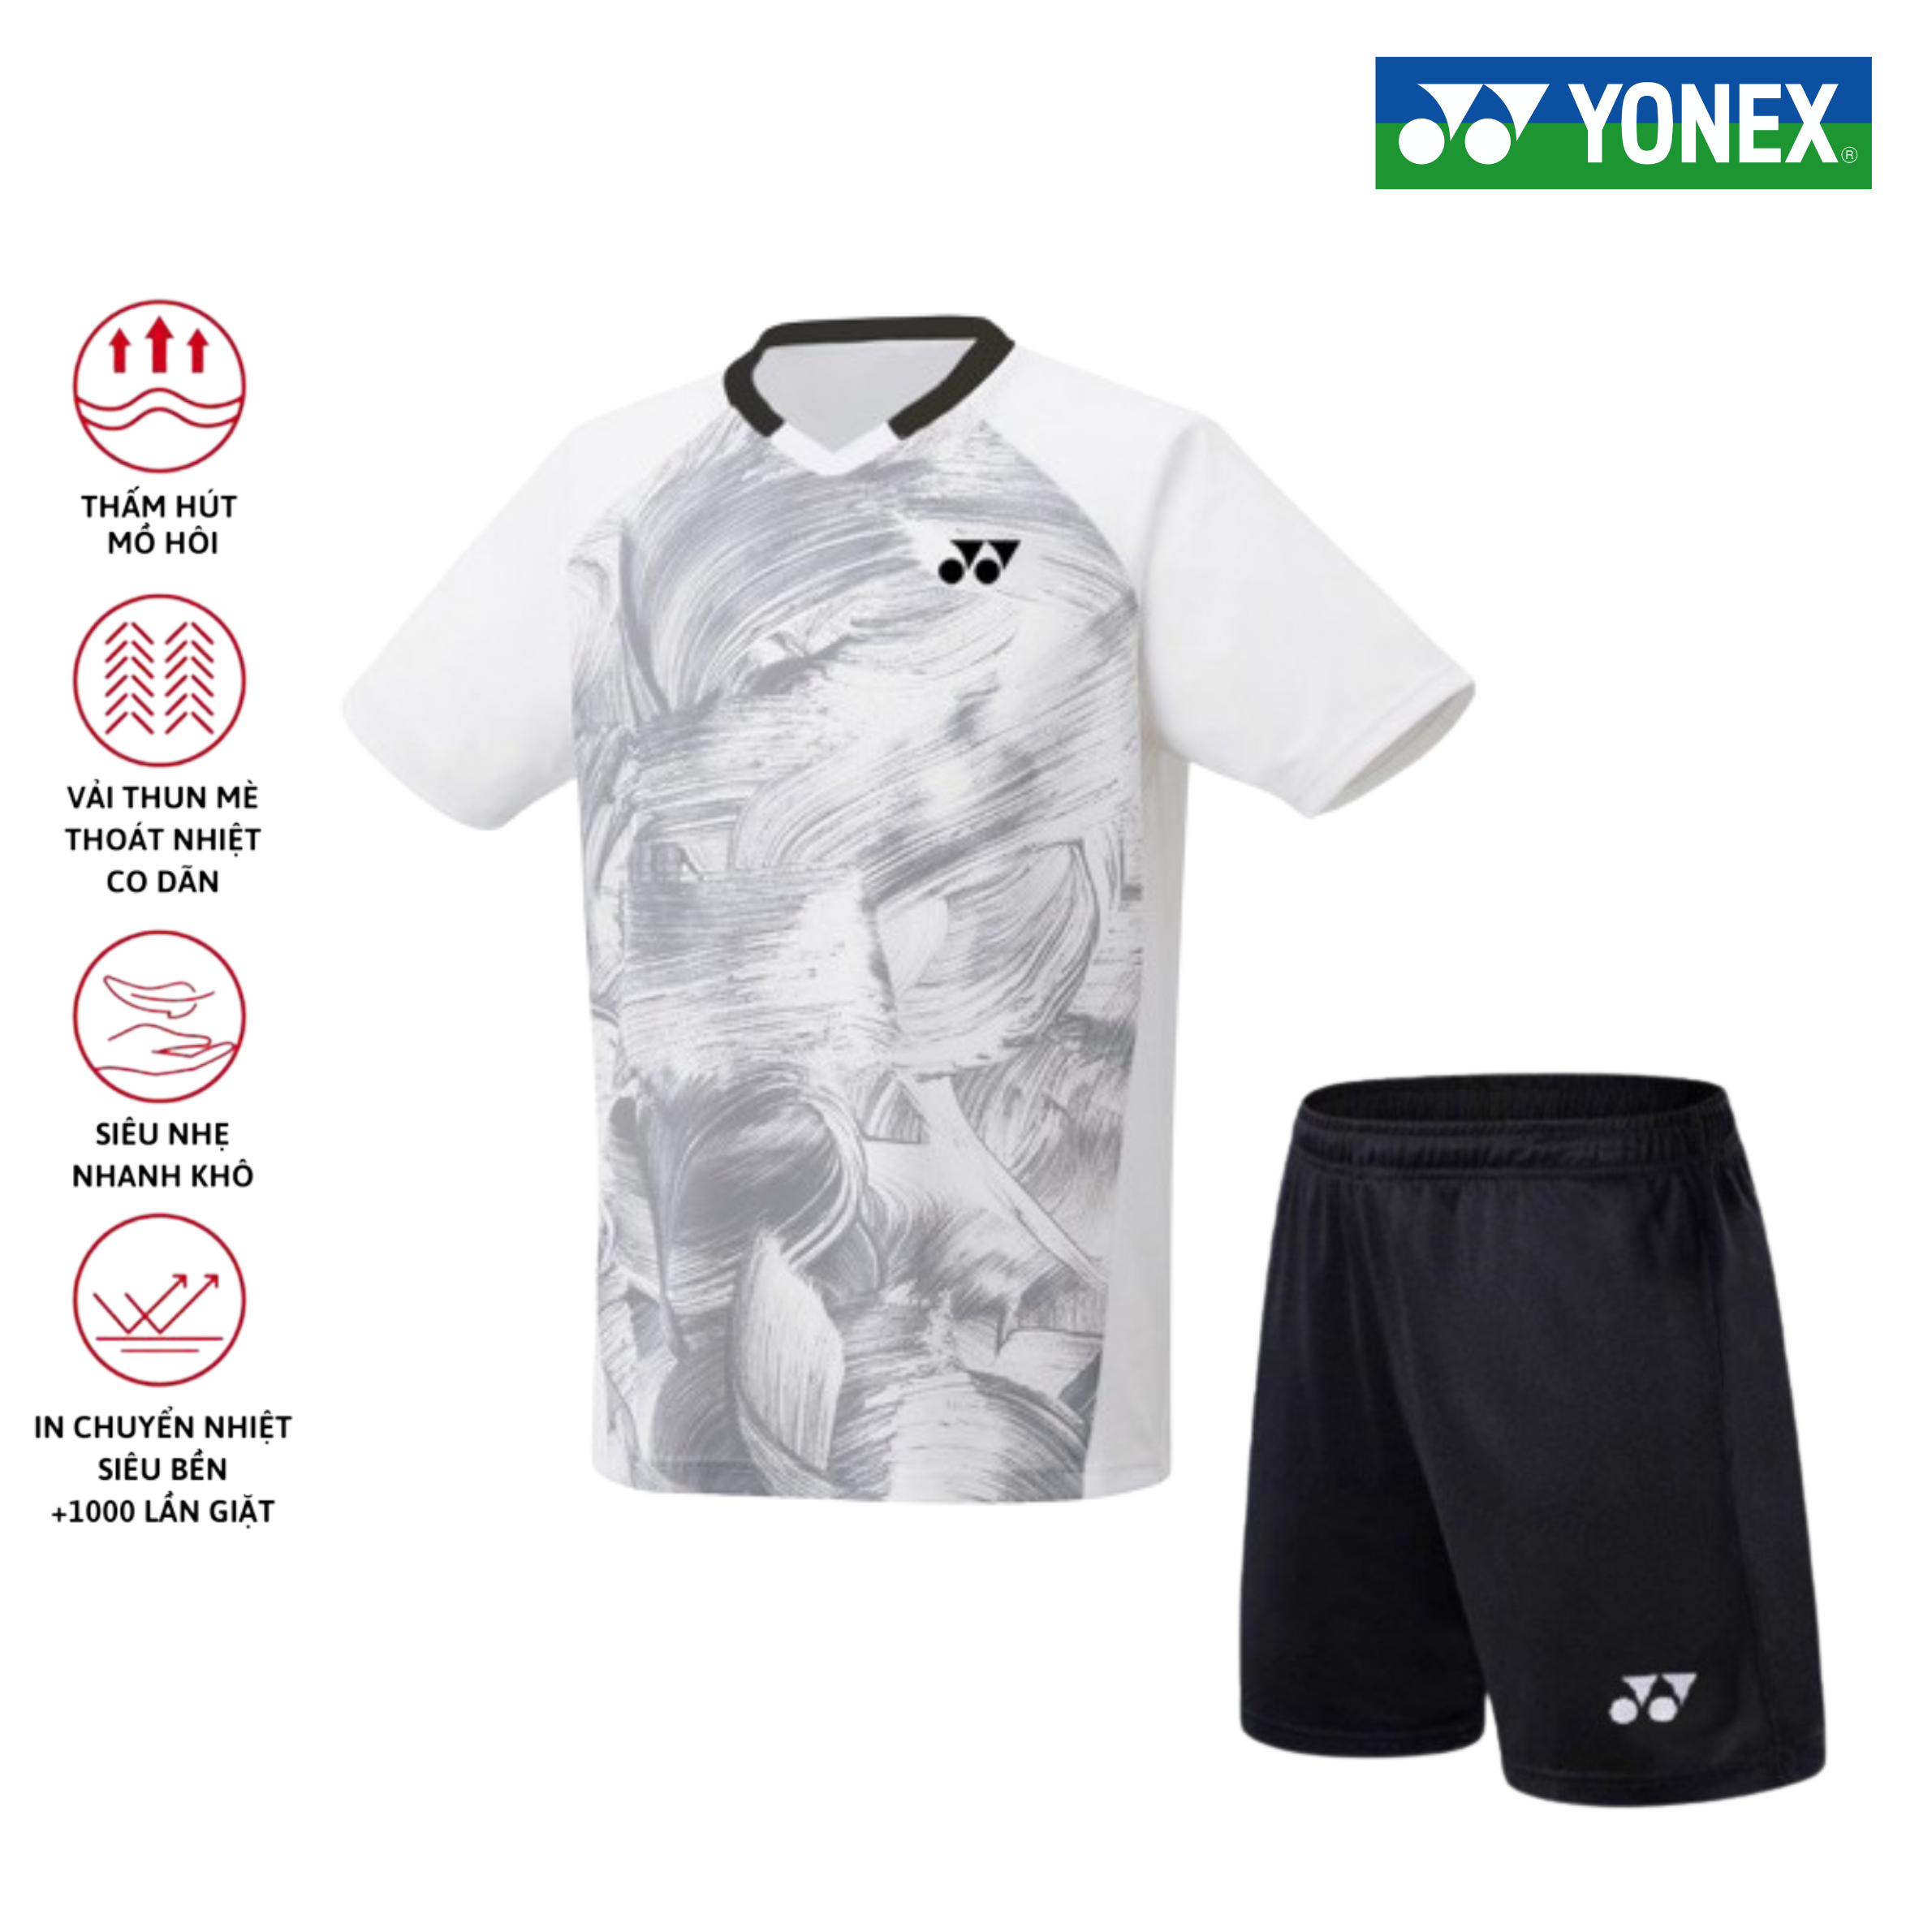 Áo cầu lông, quần cầu lông Yonex chuyên nghiệp mới nhất sử dụng tập luyện và thi đấu cầu lông A468